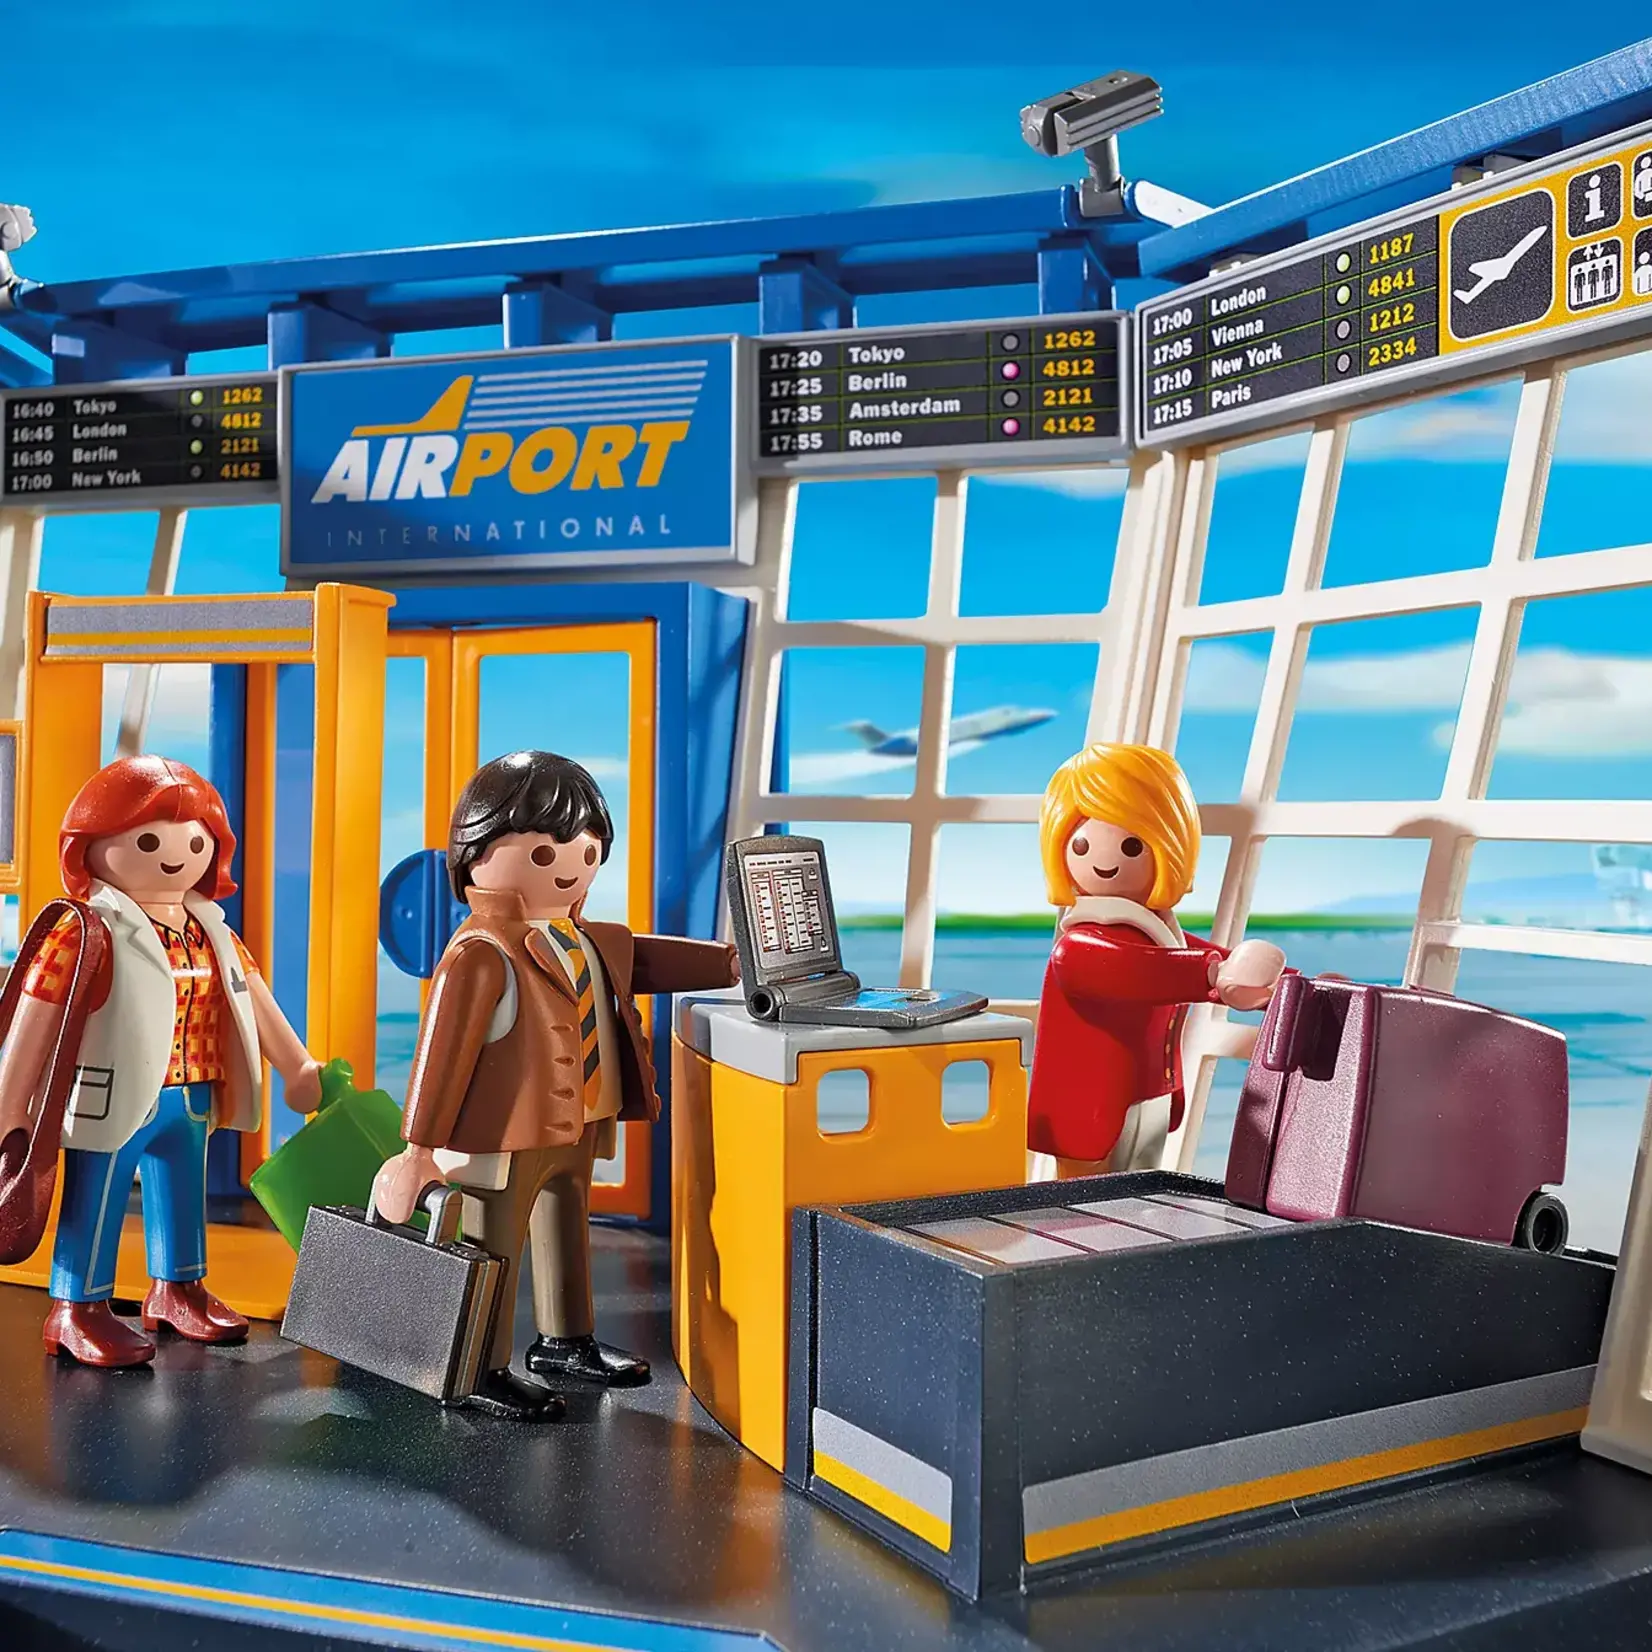 Playmobil Playmobil City Action 5338 - Aéroport avec tour de contrôle